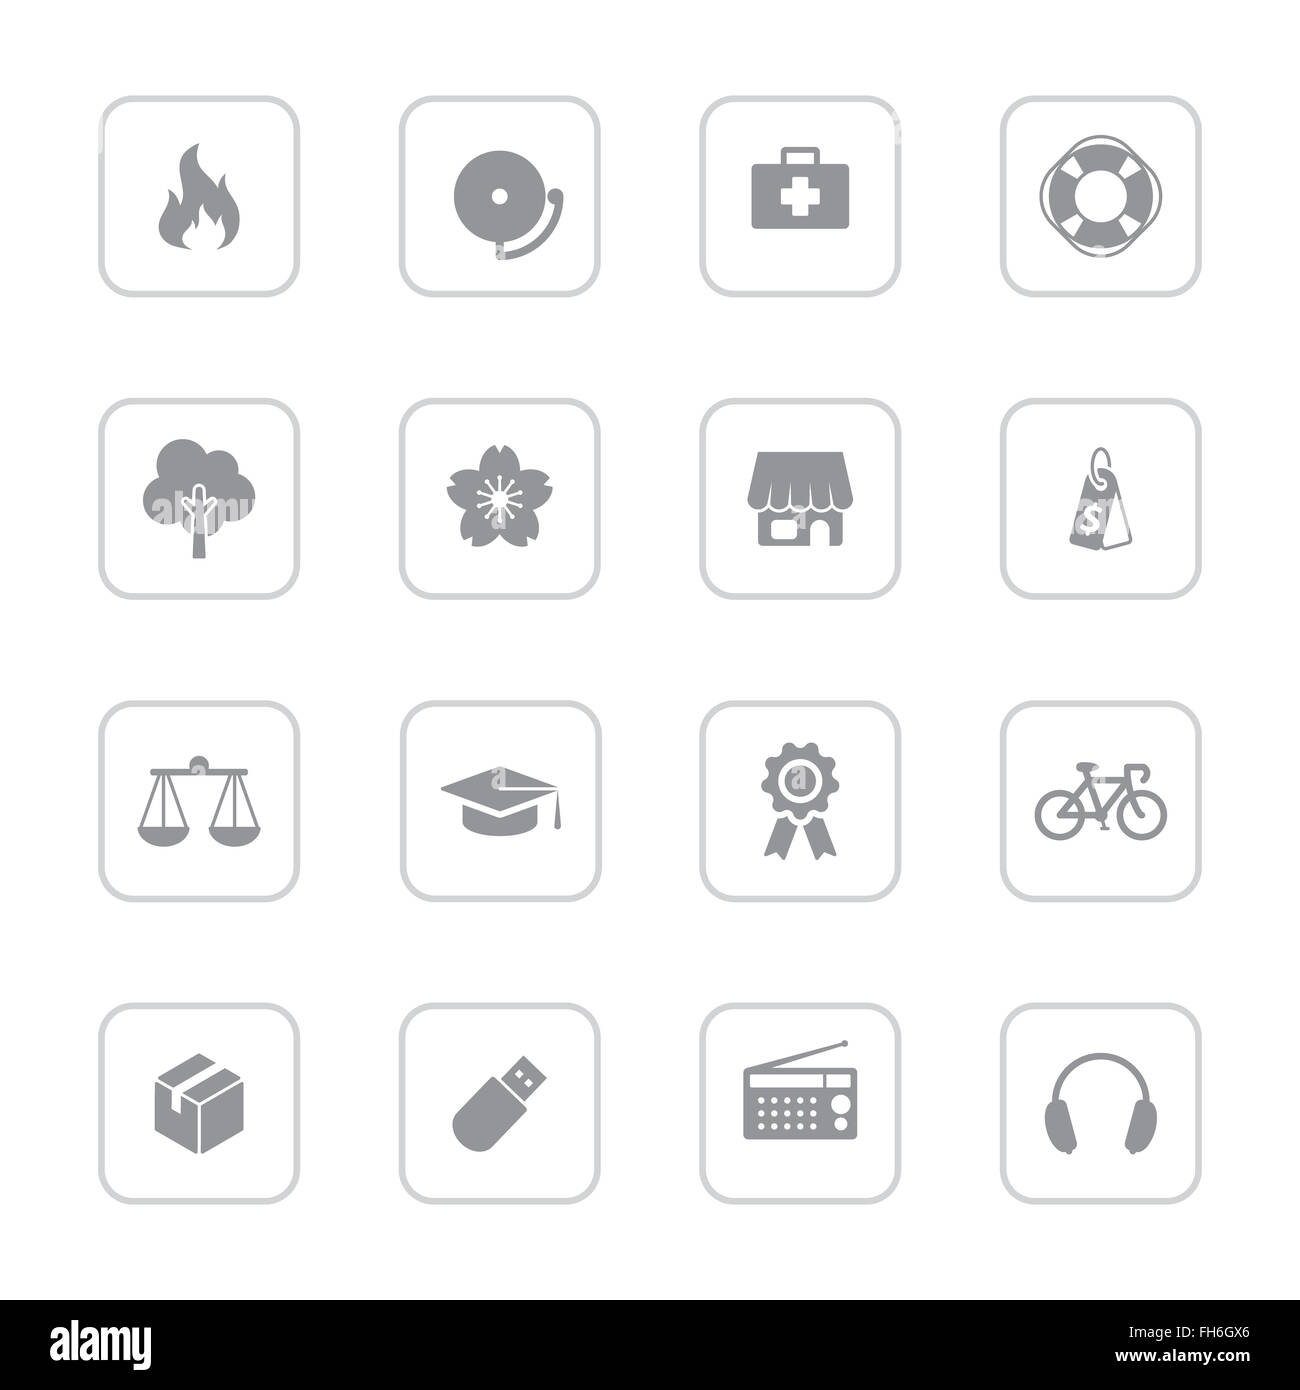 [JPEG] web icon set 6 gris avec cadre rectangle arrondi pour le web design, l'interface utilisateur (IU), l'infographie et de l'application mobile Banque D'Images